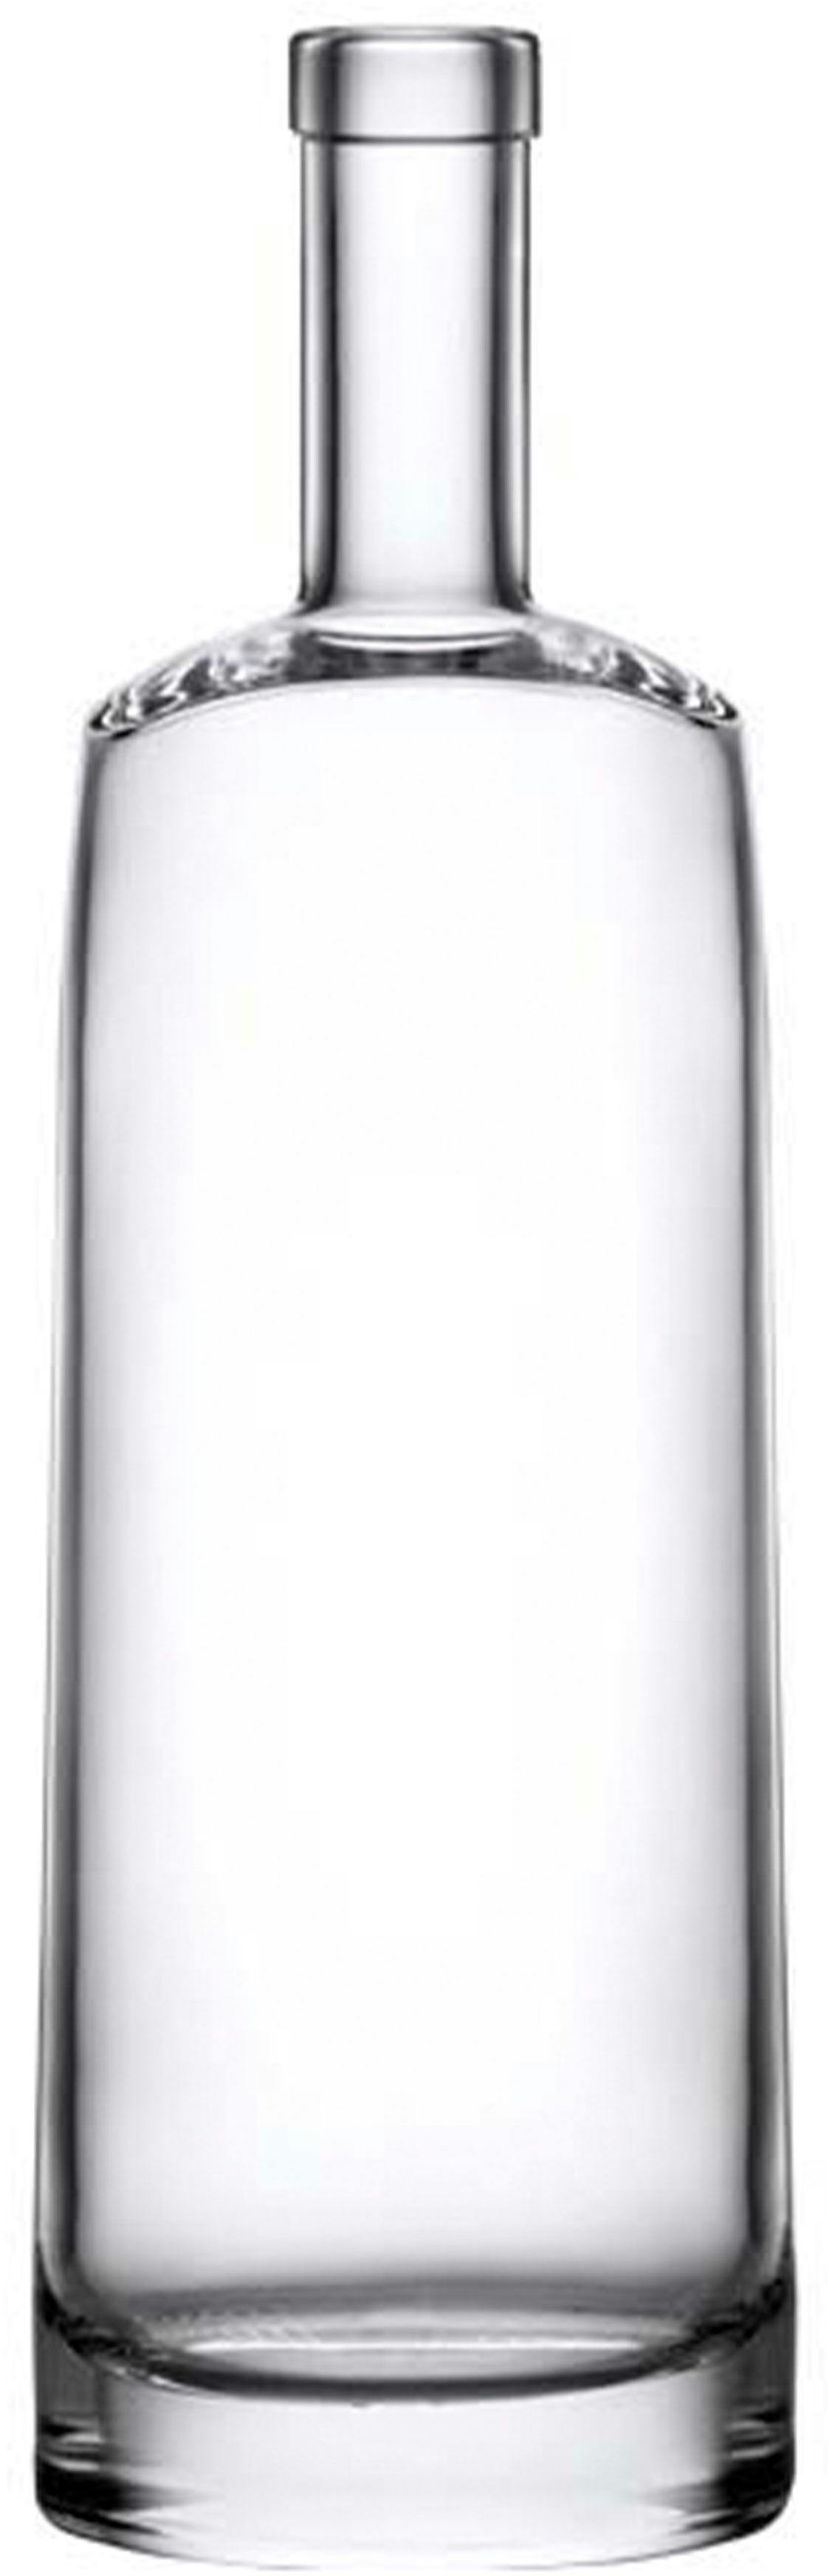 Bottle ARYA 700 FVL 12